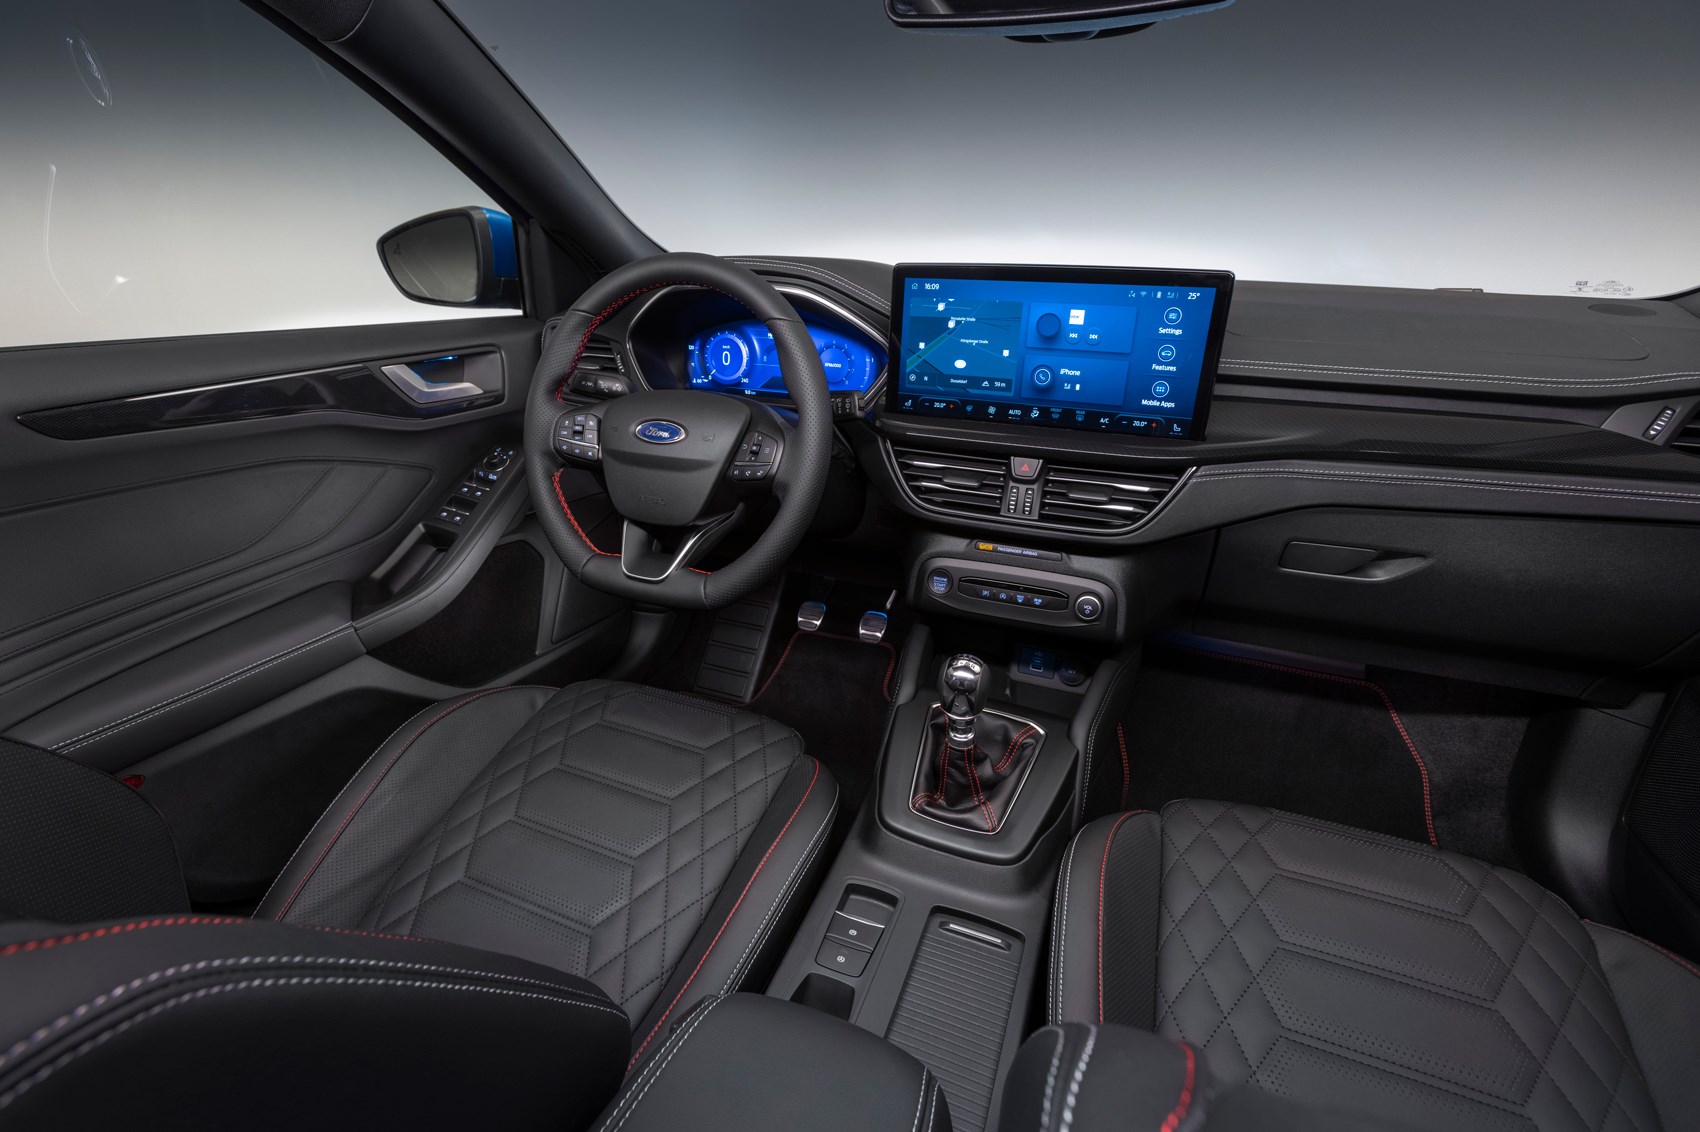 Ford Focus 5p 2021 - Modèles et versions